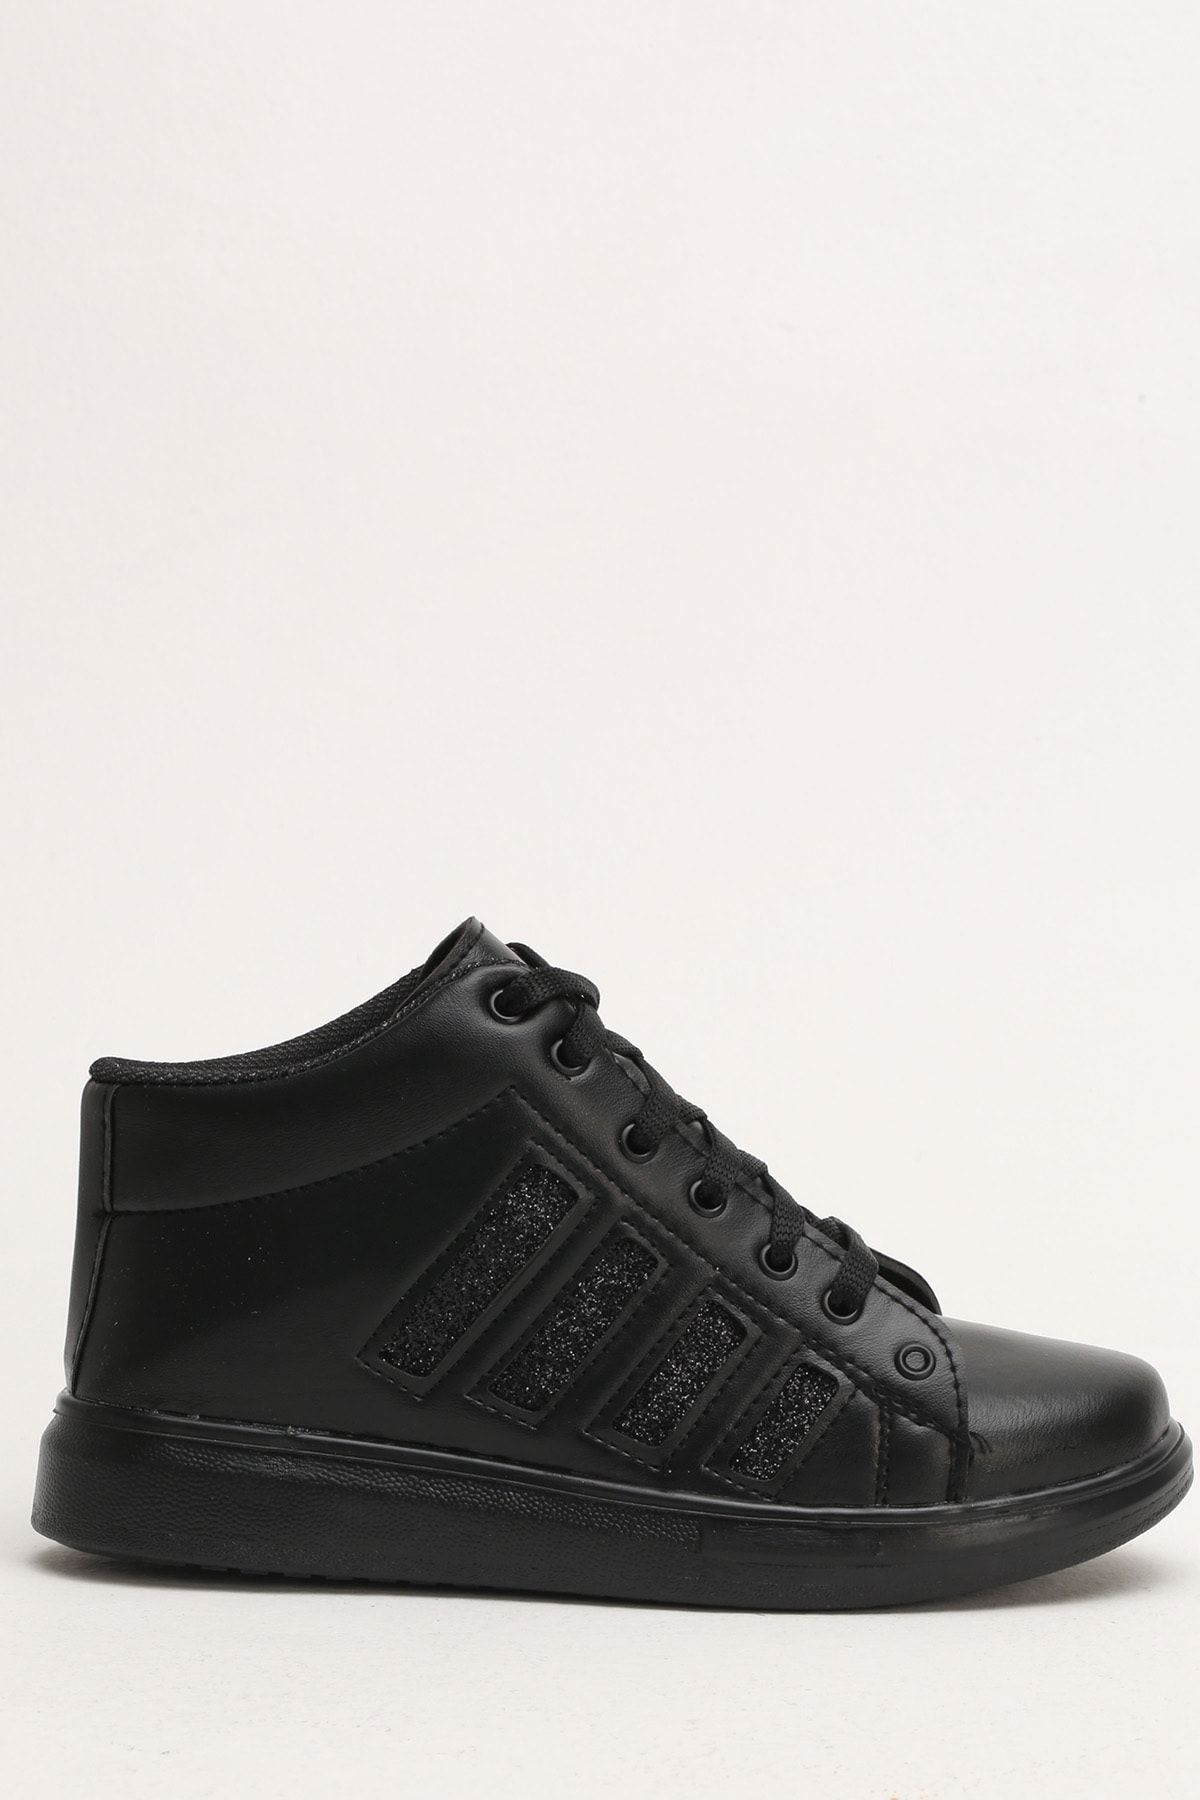 Ayakkabı Modası Siyah Kadın Spor Ayakkabı 4000-19-101009